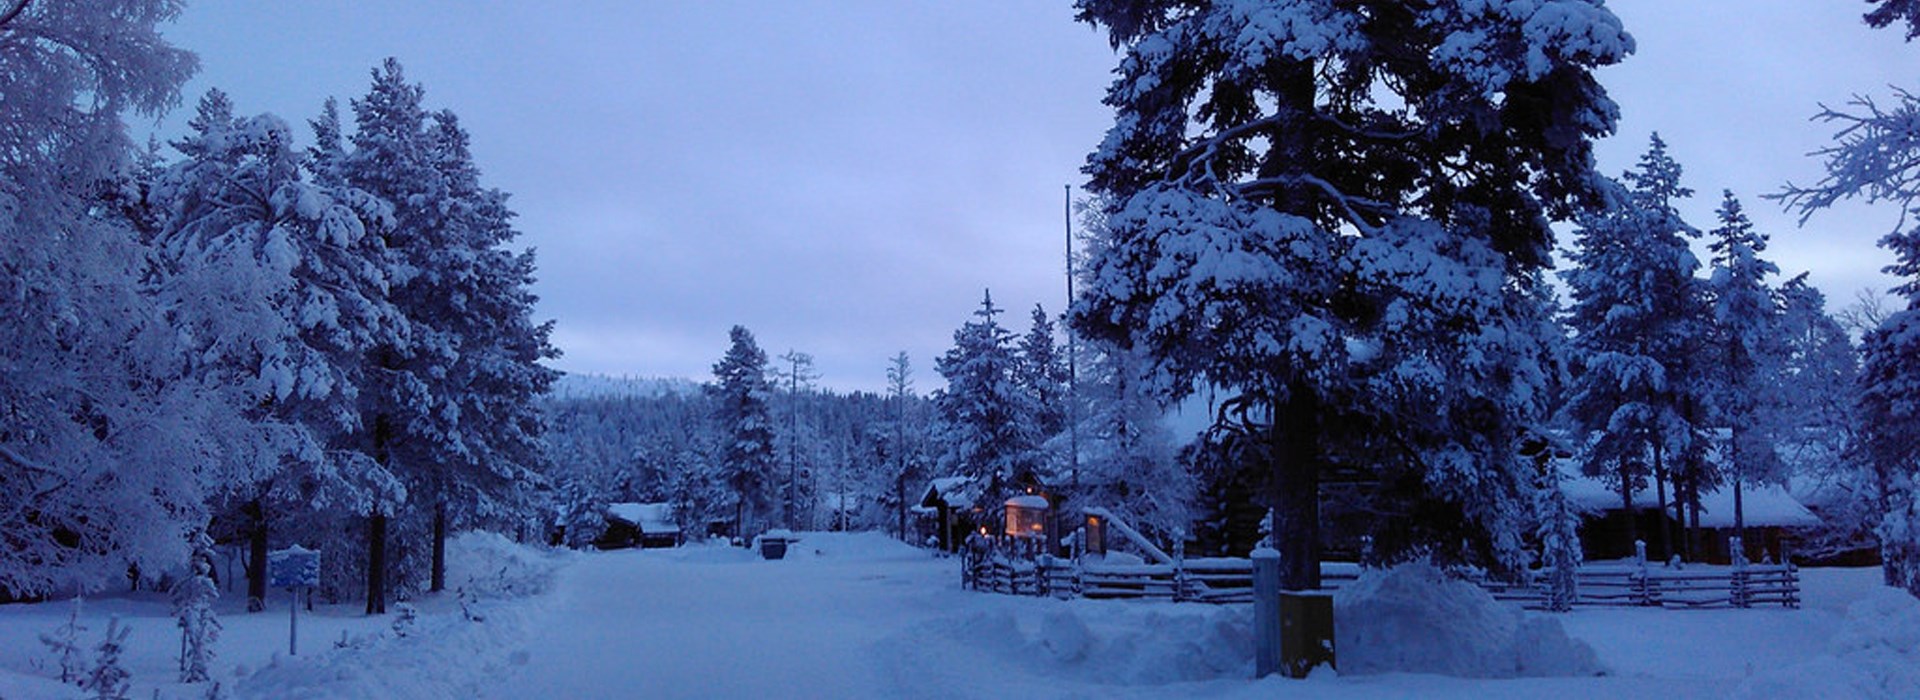 Visiter Saariselka - Laponie